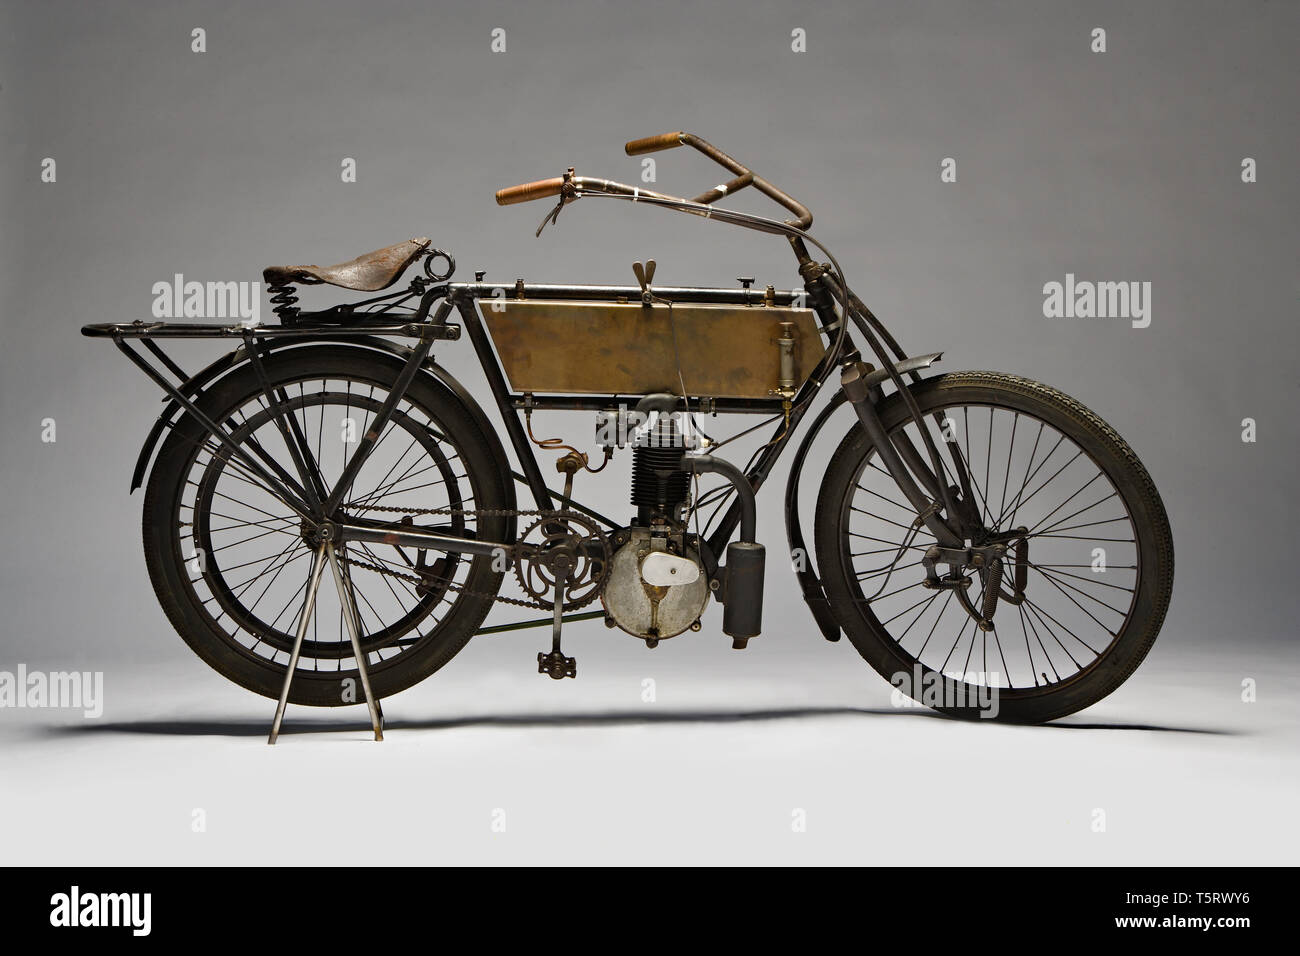 Moto d'Epoca Zedel - Frera 3 Marca: Hp - Frera Zedel modello: 3 Hp nazione: Svizzera - Saint Aubin anno: 1903 condizioni: restaurata cili Foto de stock